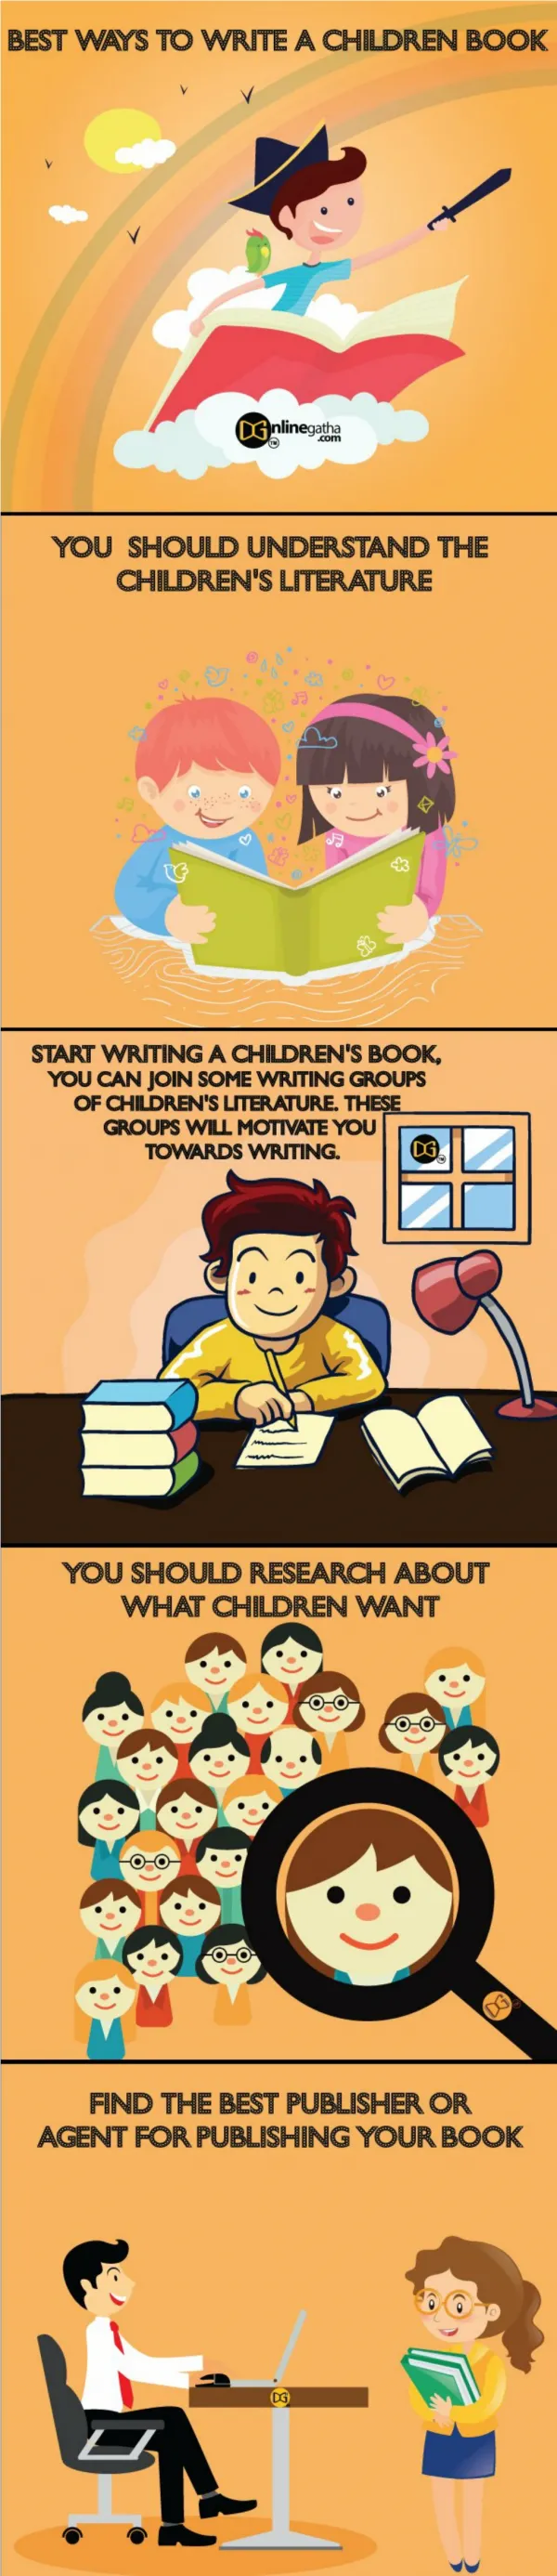 BEST WAYS TO WRITE A CHILDREN BOOK